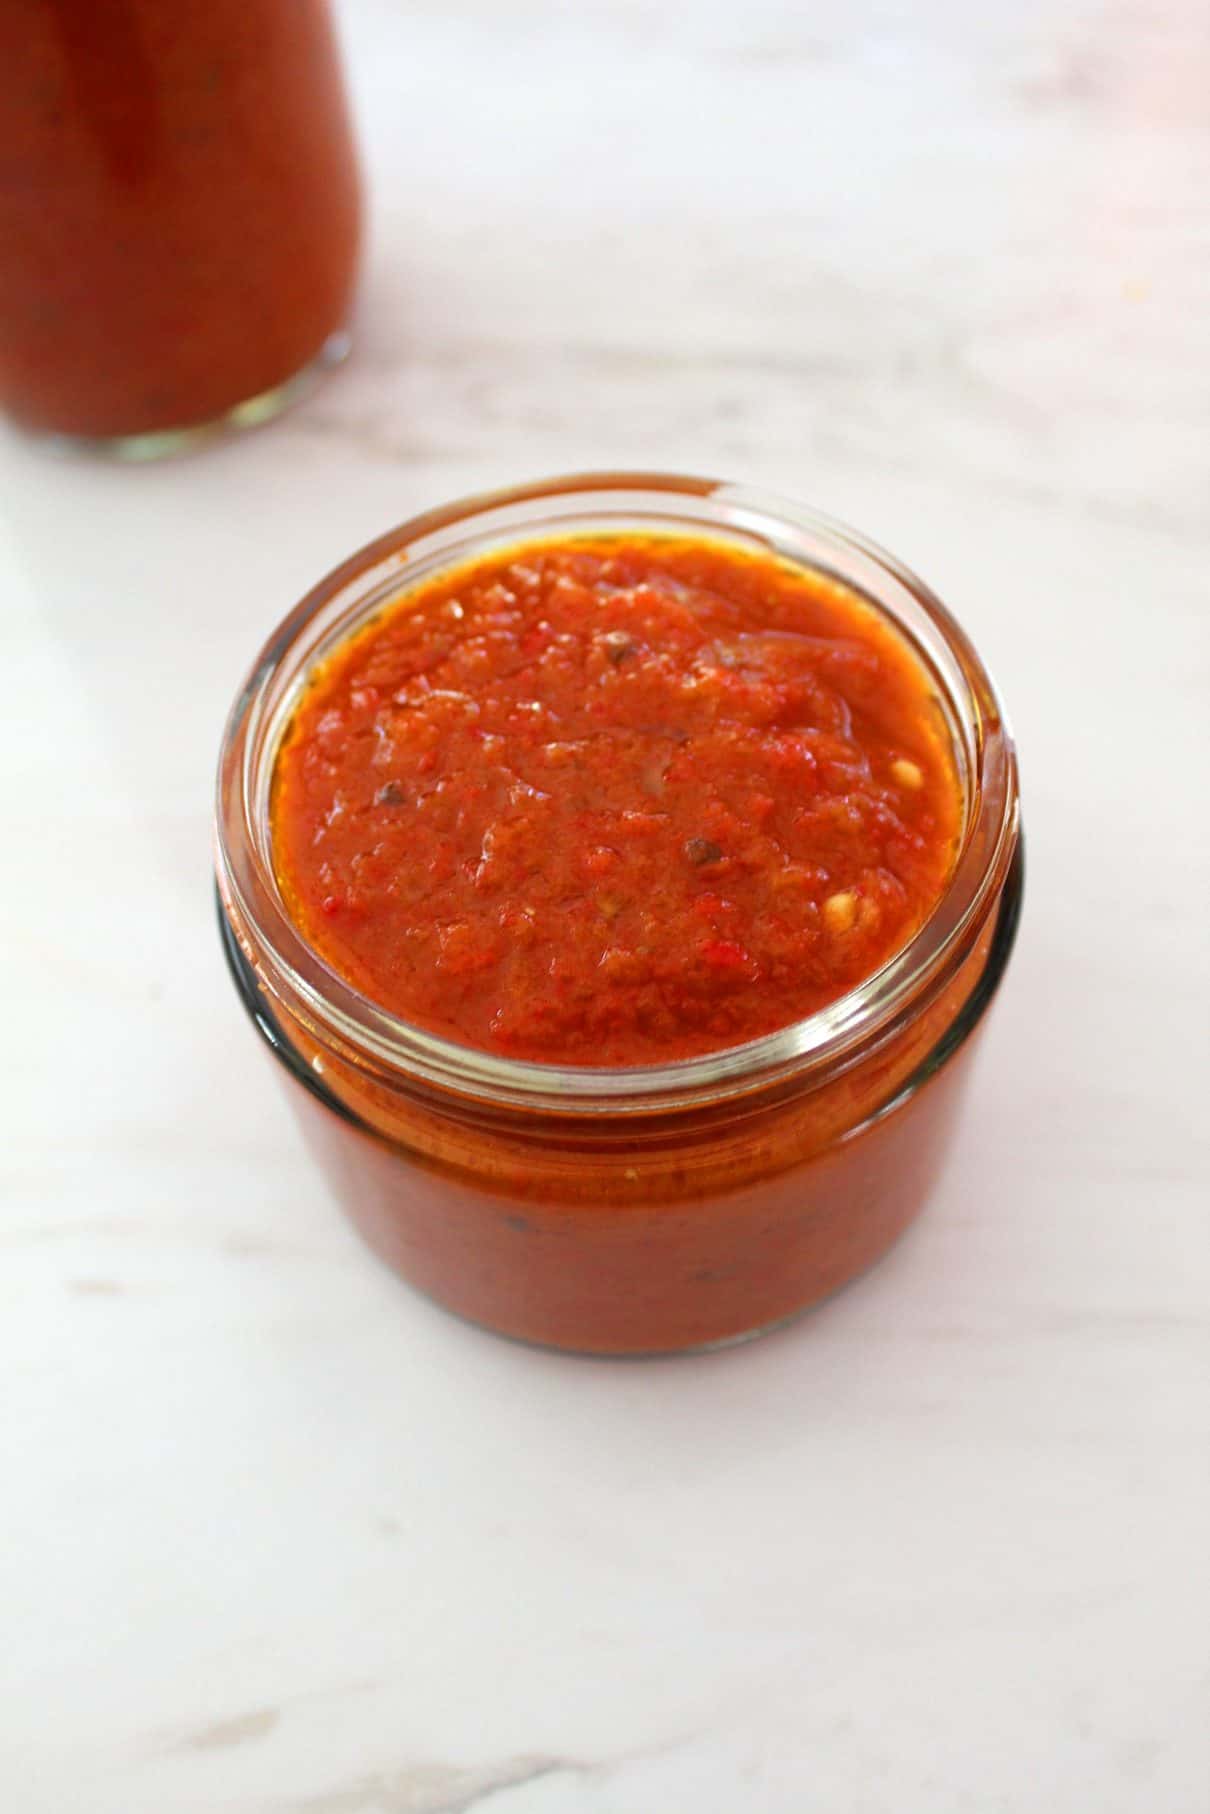 A jar of ajvar red pepper sauce